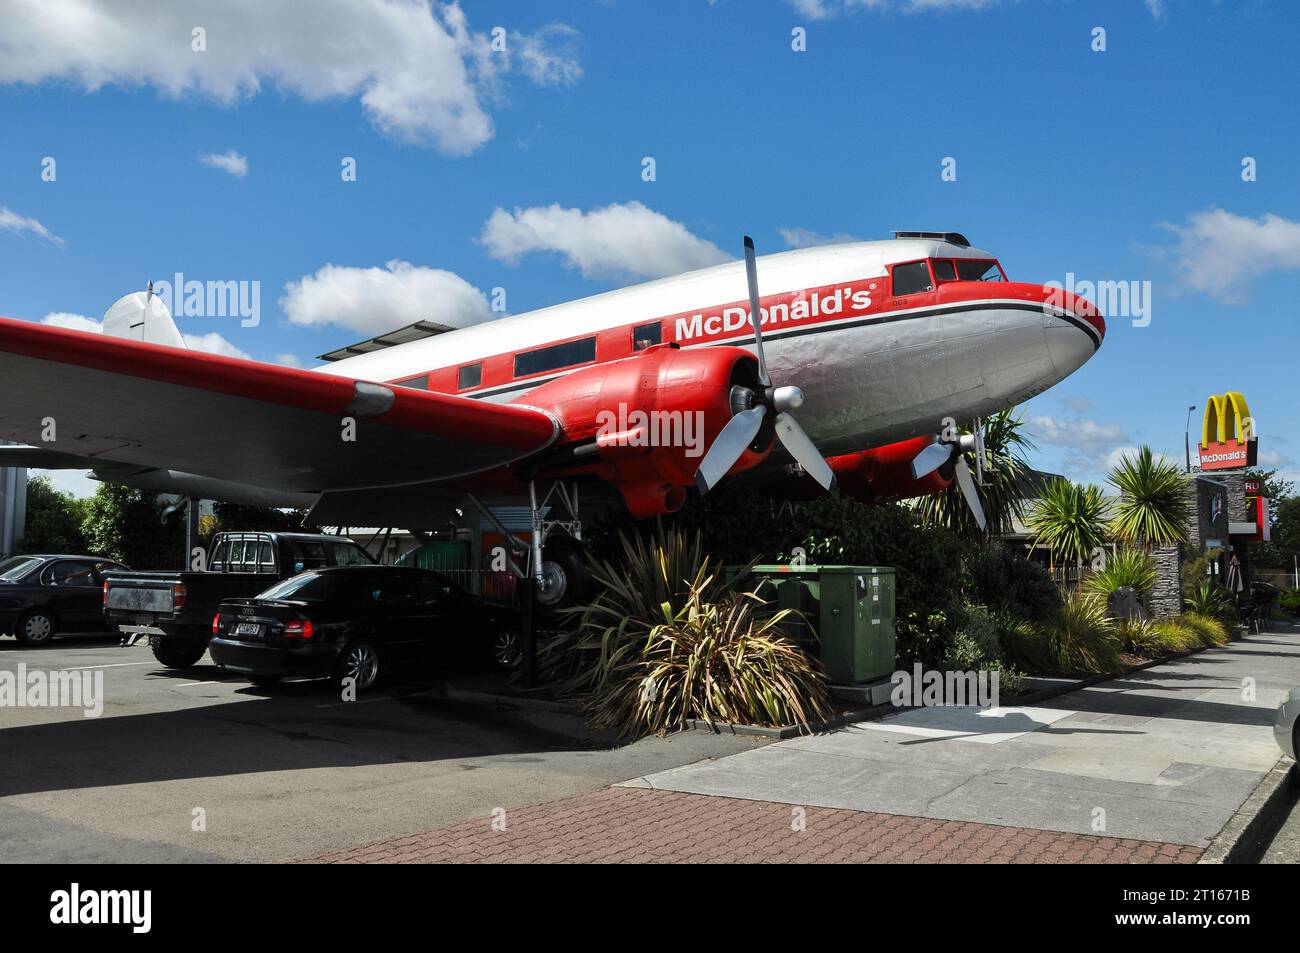 Douglas DC-3 Dakota avion converti pour être utilisé dans le restaurant McDonald's à Taupo, Nouvelle-Zélande. Avion, série ZK-CAW Banque D'Images